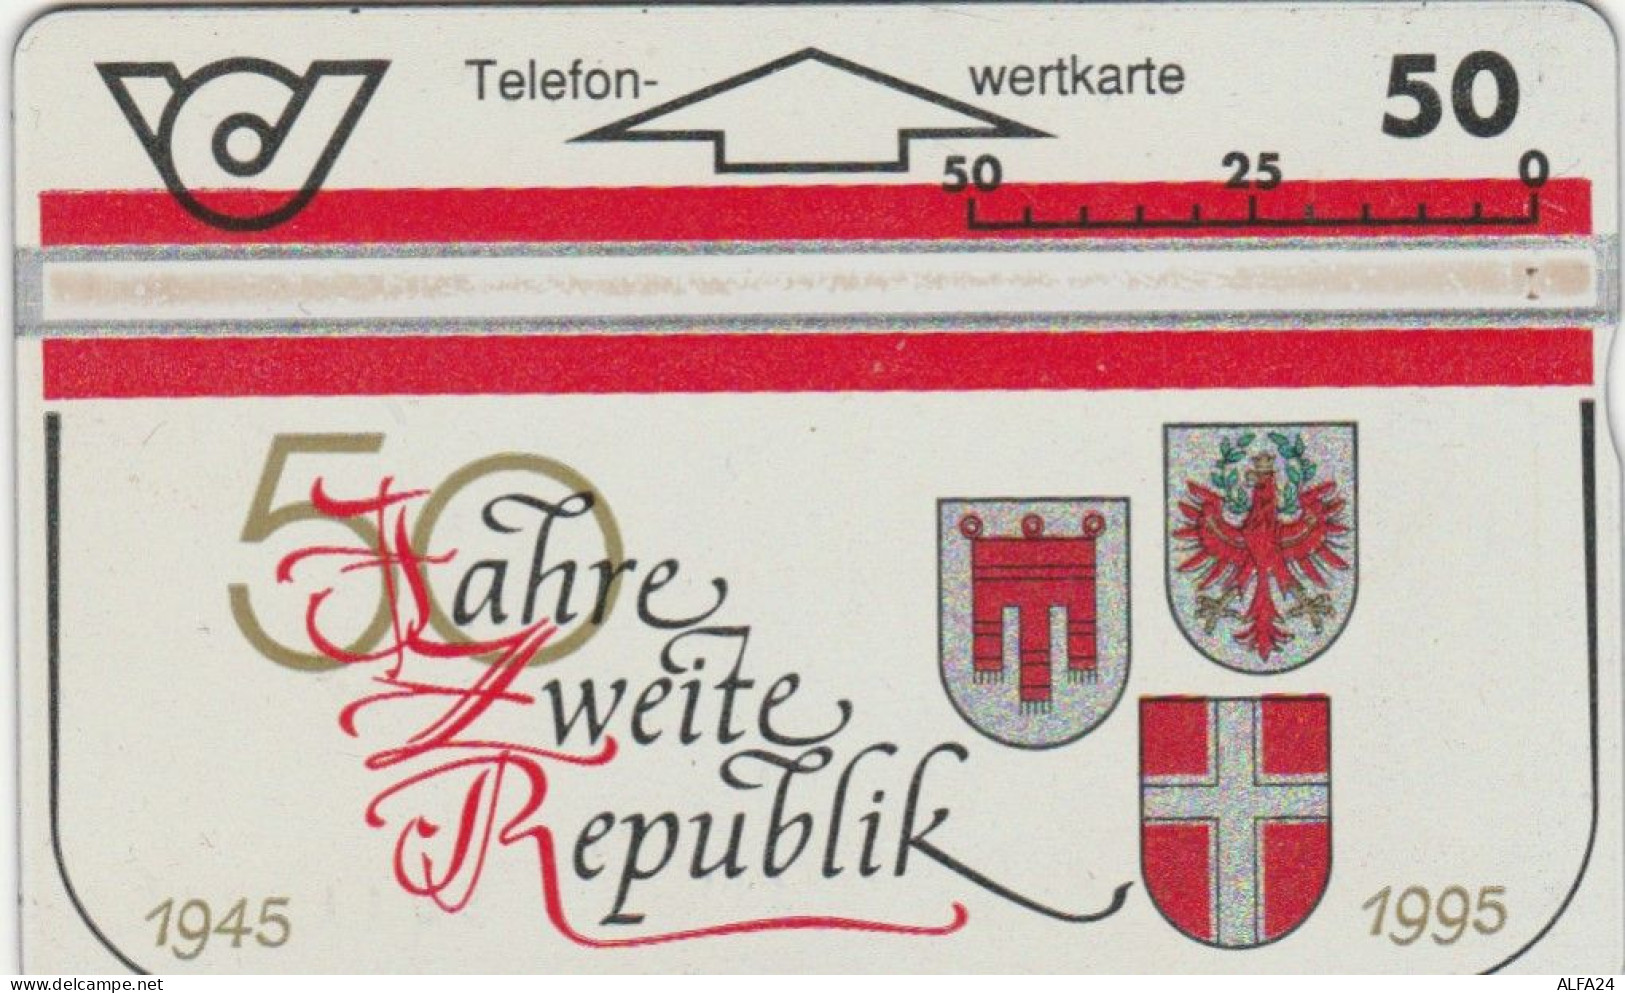 PHONE CARD AUSTRIA (CK6224 - Oesterreich